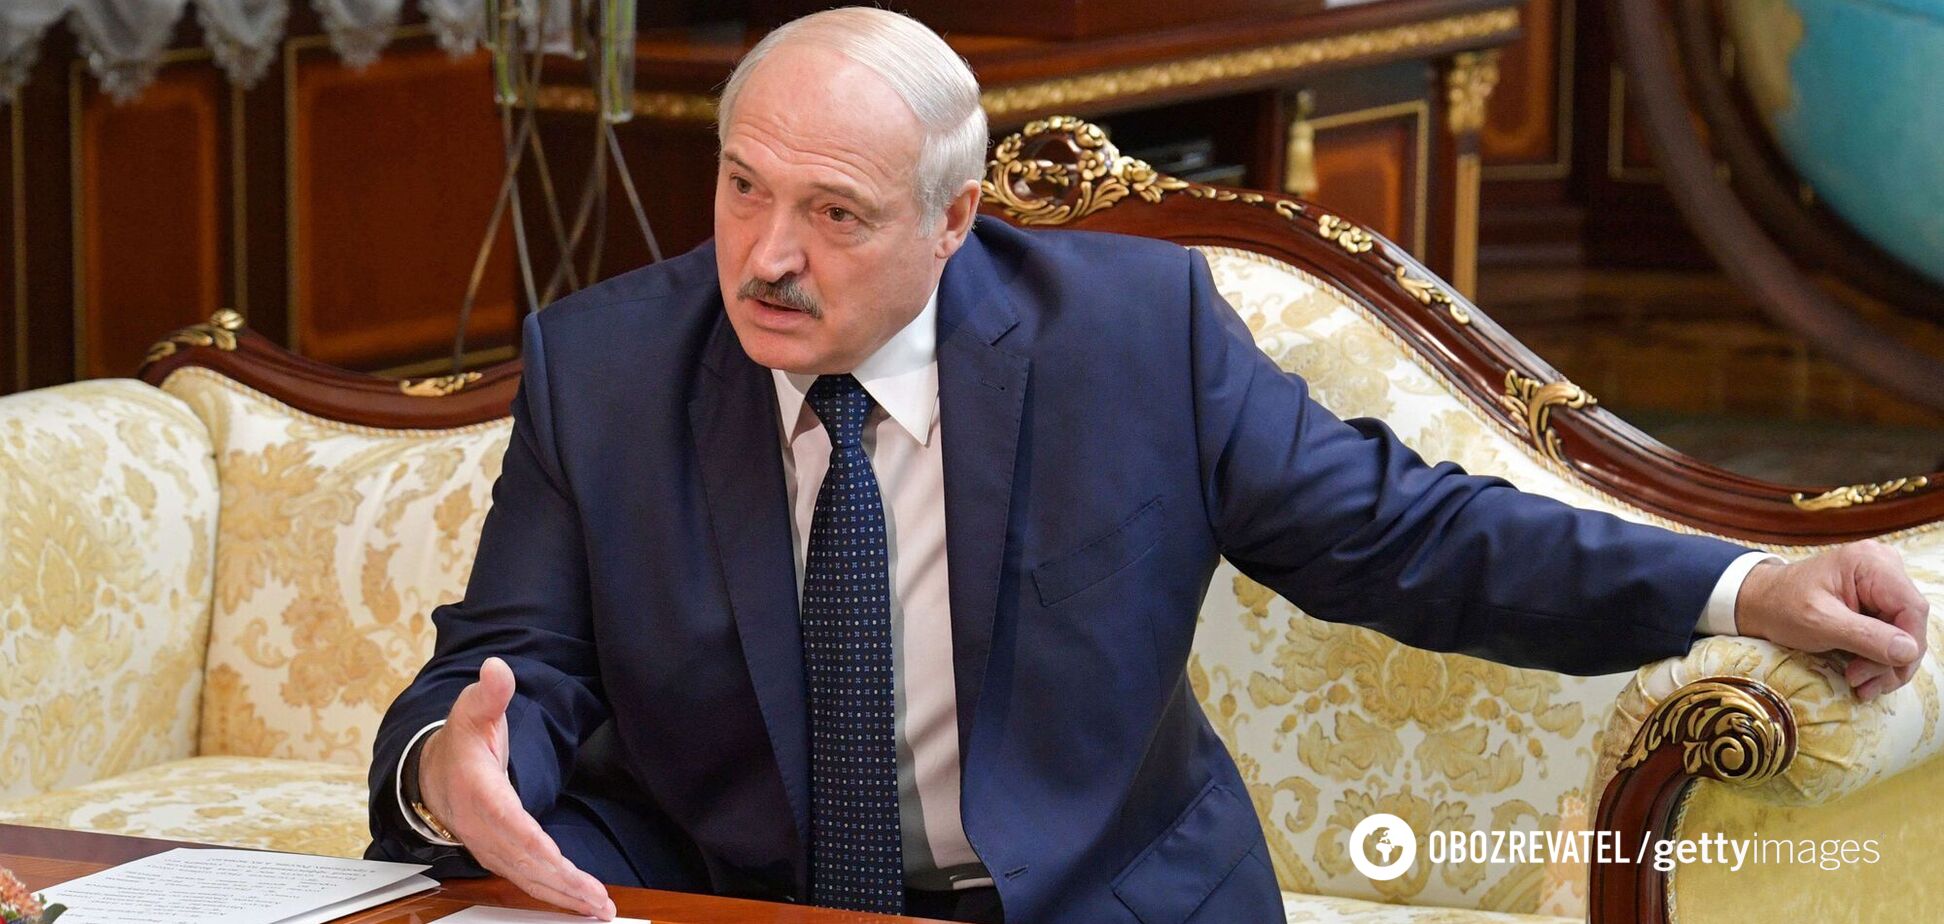 Олександр Лукашенко заявив, що його хотіли ліквідувати 9 травня